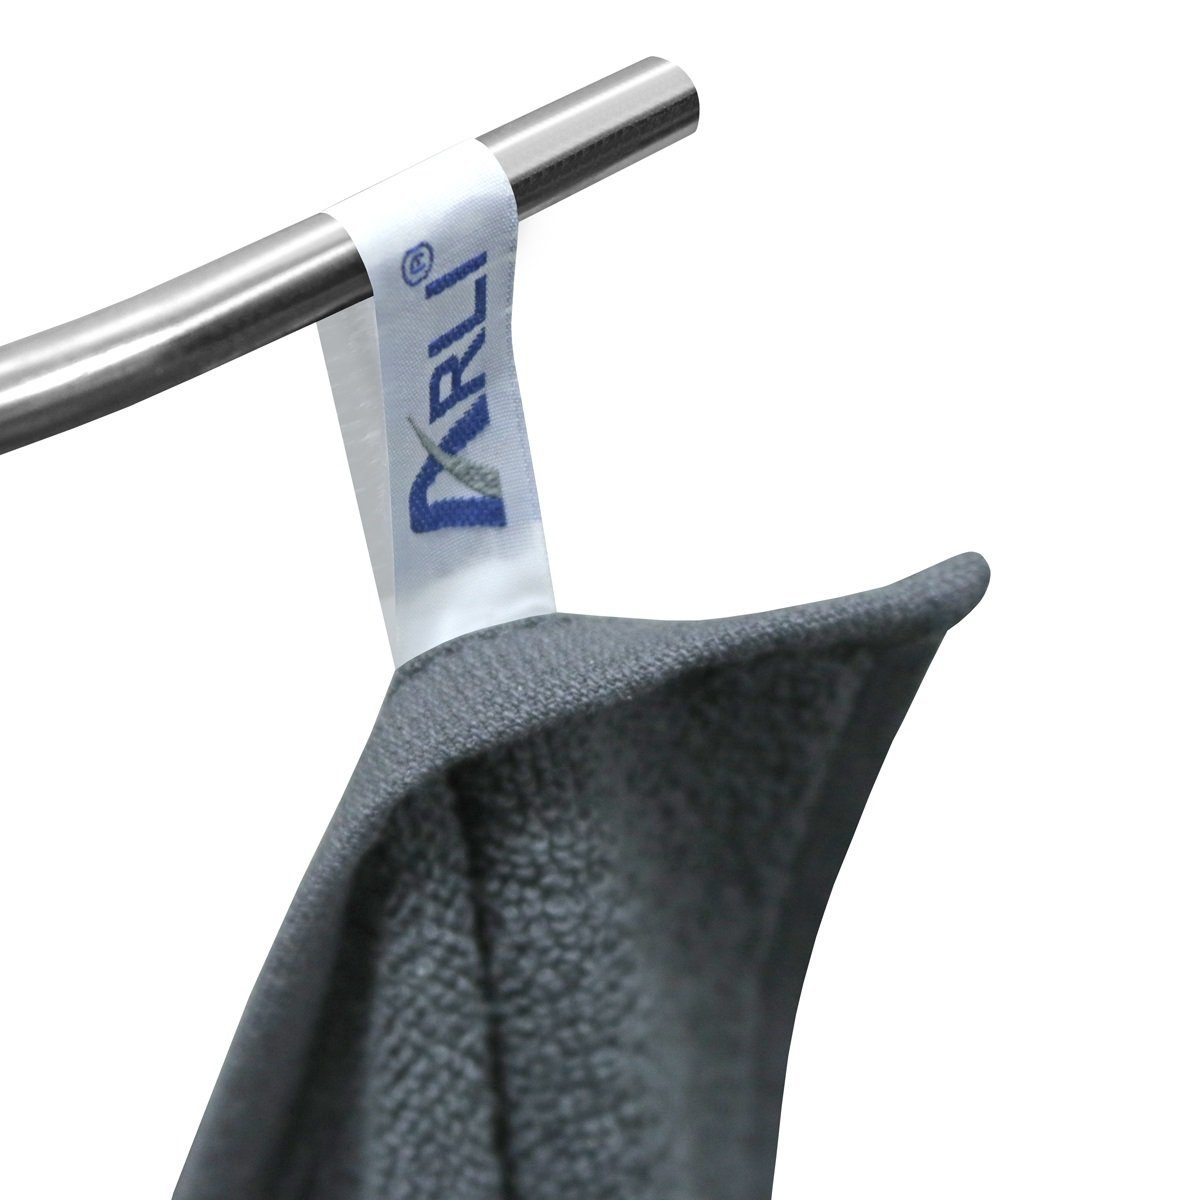 Serie Handtuch hochwertigem schlicht Baumwolle, praktisch Rohstoff klassischer Frottier elegant Handtuchaufhänger, Set ARLI Set (2-tlg) Weiß 100% Baumwolle modern Design Handtücher mit Handtuch aus